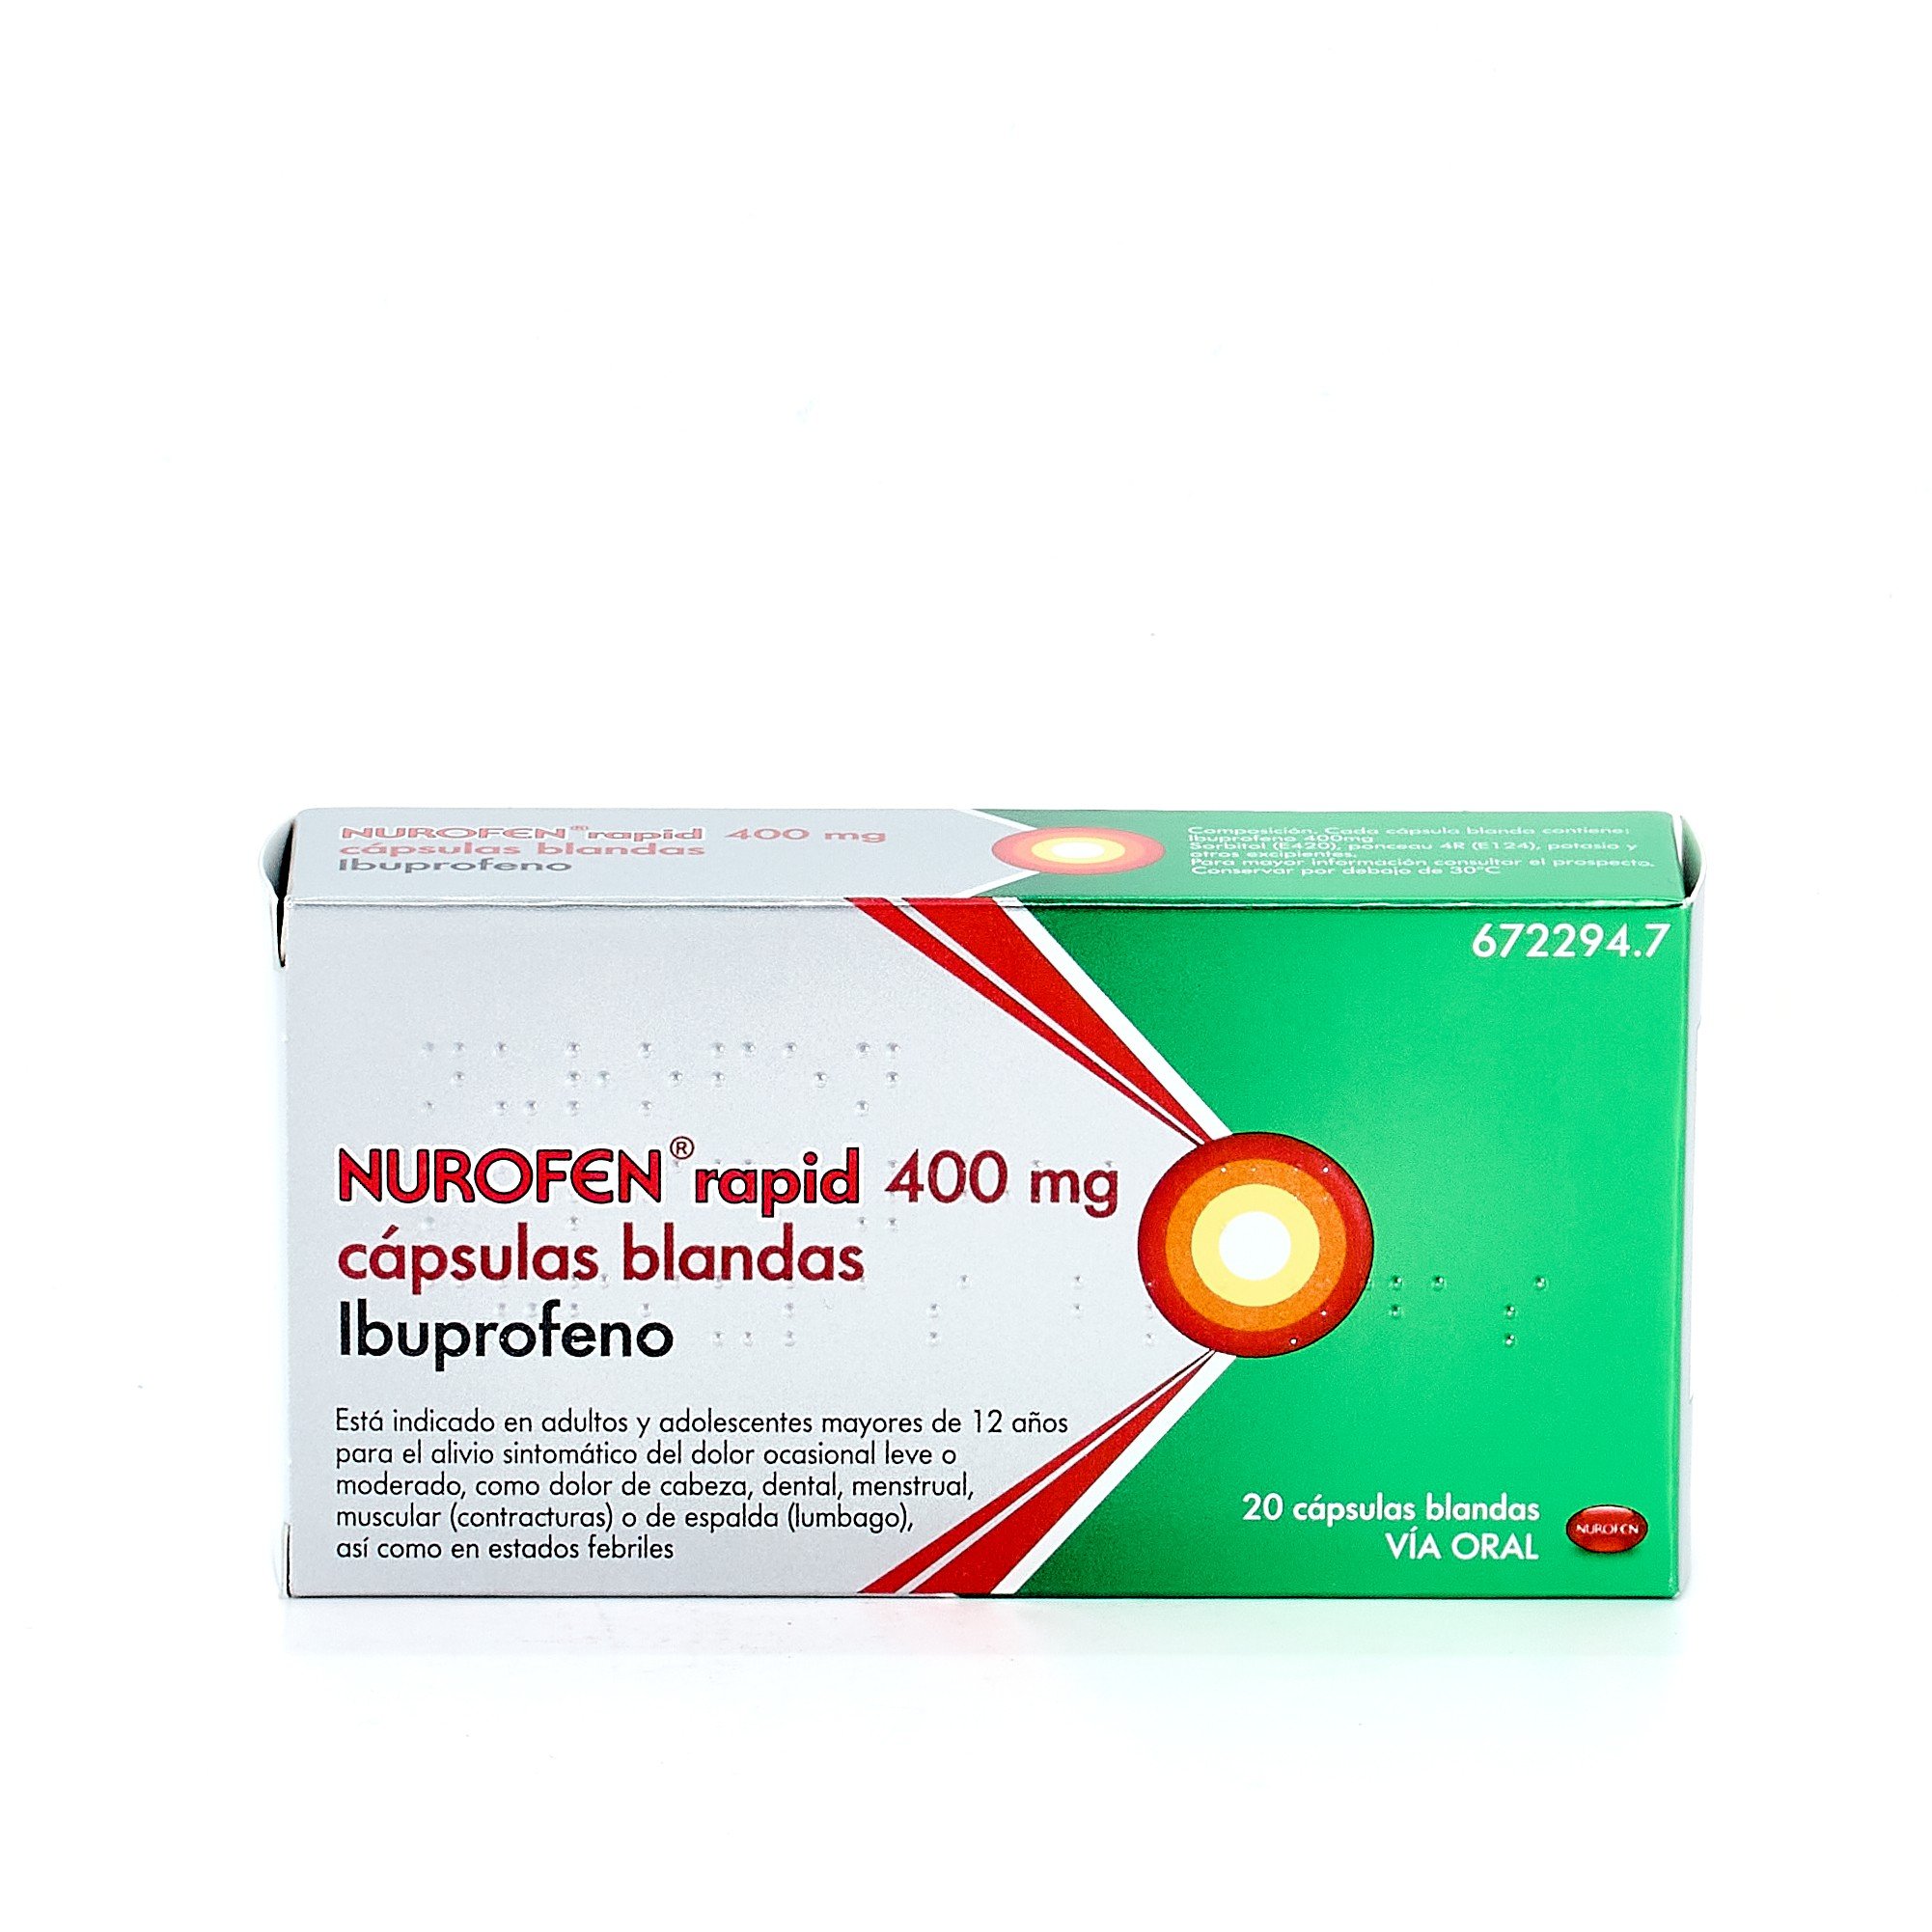 NUROFEN RAPID 400 mg 20 CAPSULAS BLANDAS